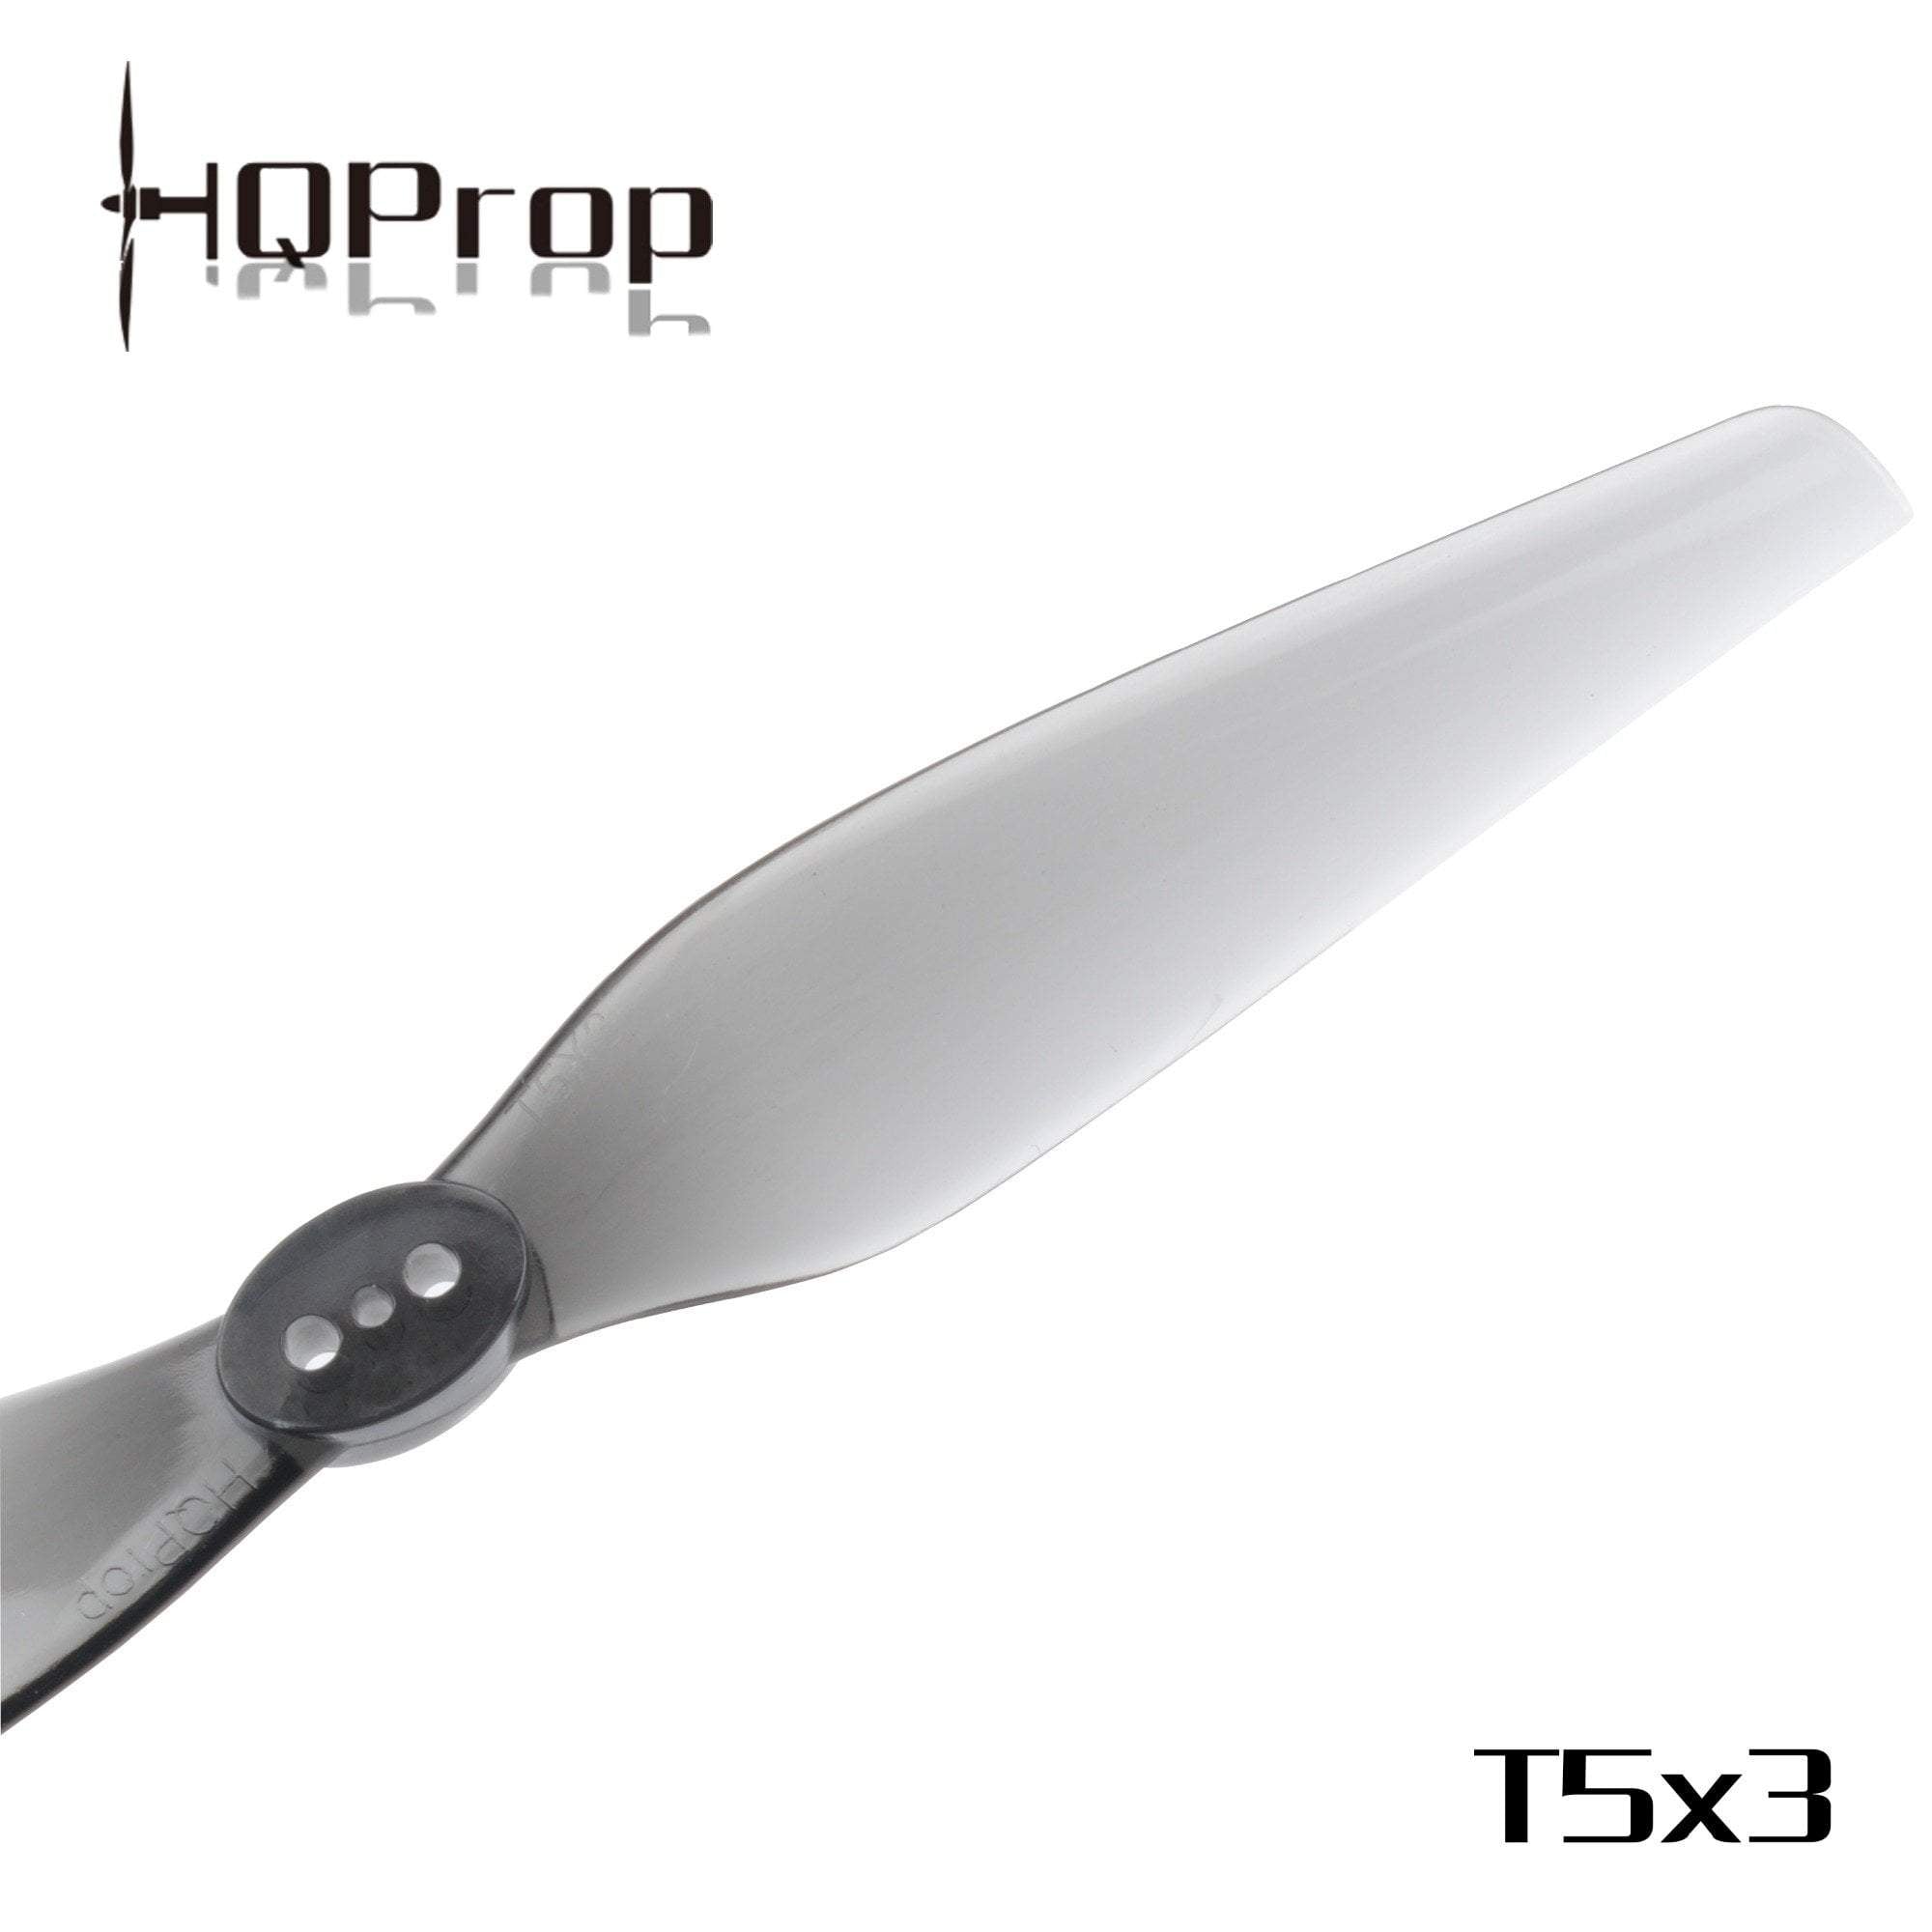 HQProp T5X3 5" Bi Blade Propellers (2CW+2CCW)